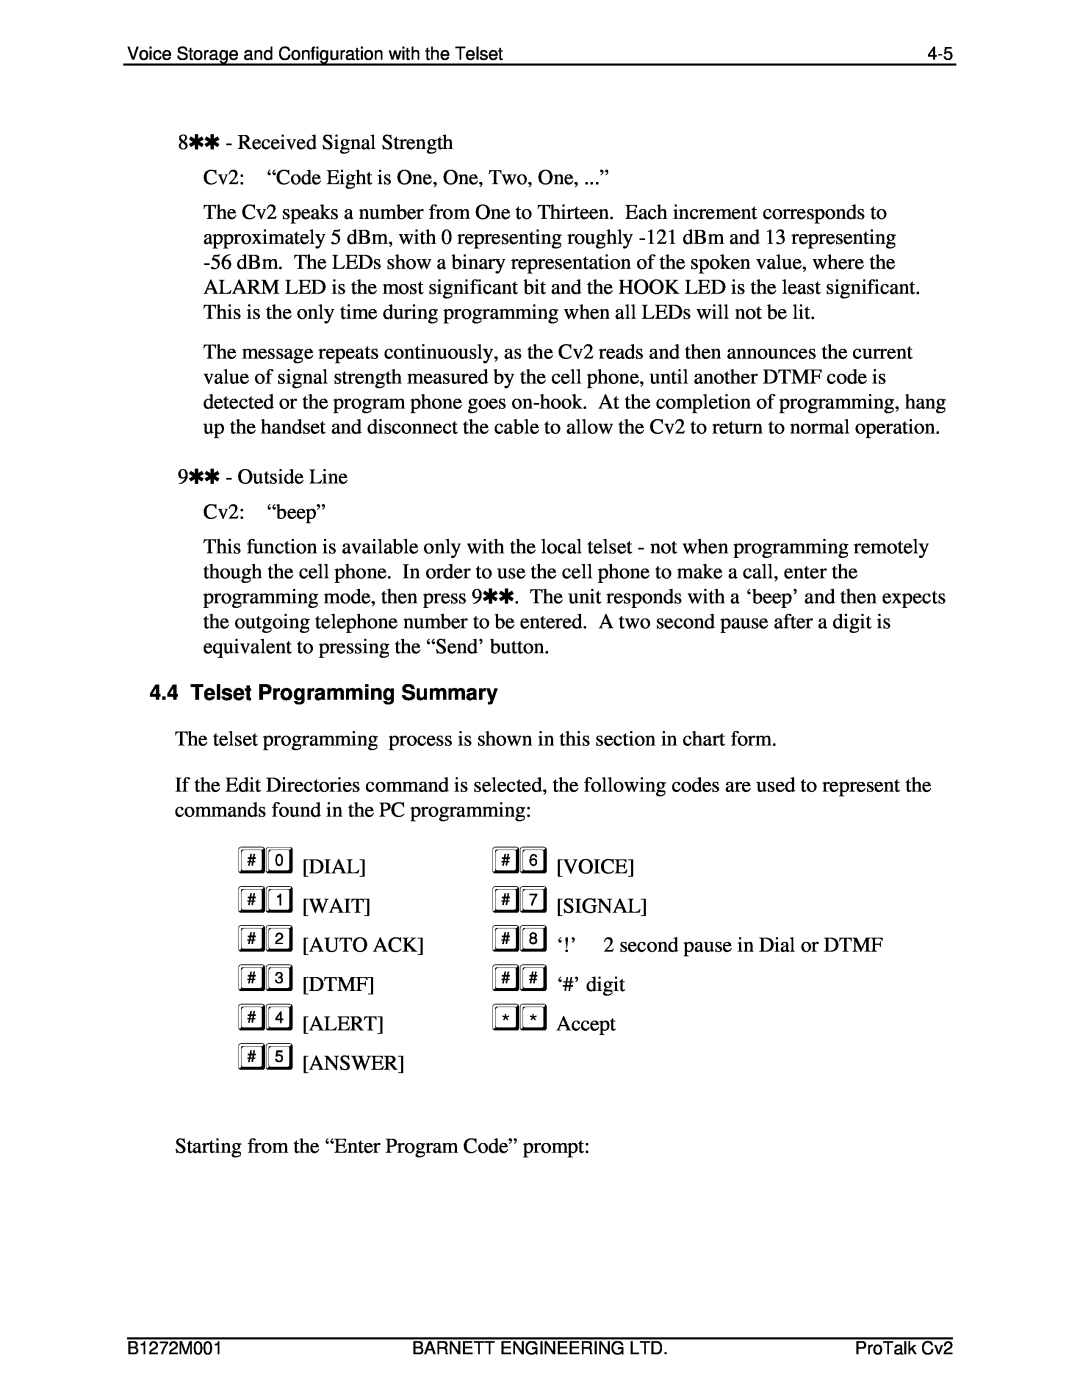 Barnett Engineering ARU CV2 instruction manual Telset Programming Summary 